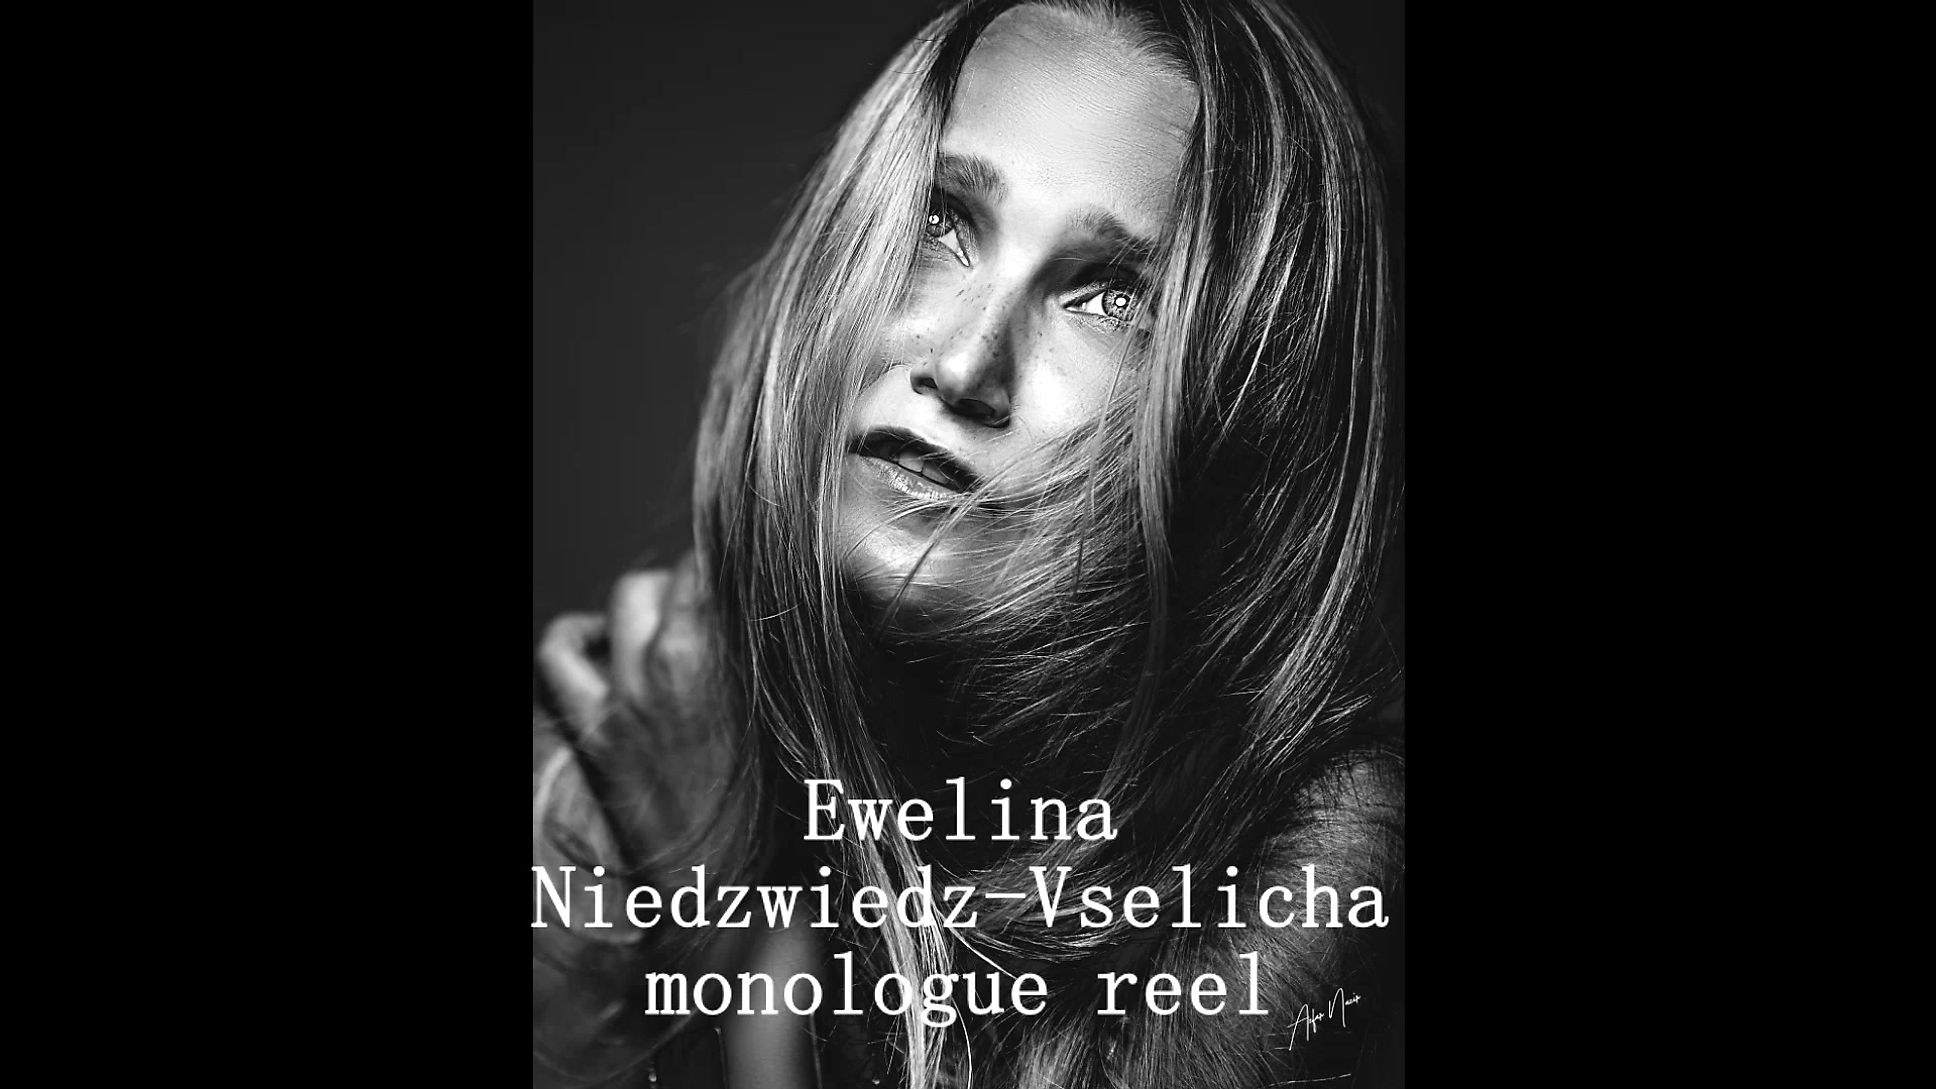 Ewelina Niedzwiedz-Vselicha monologue reel